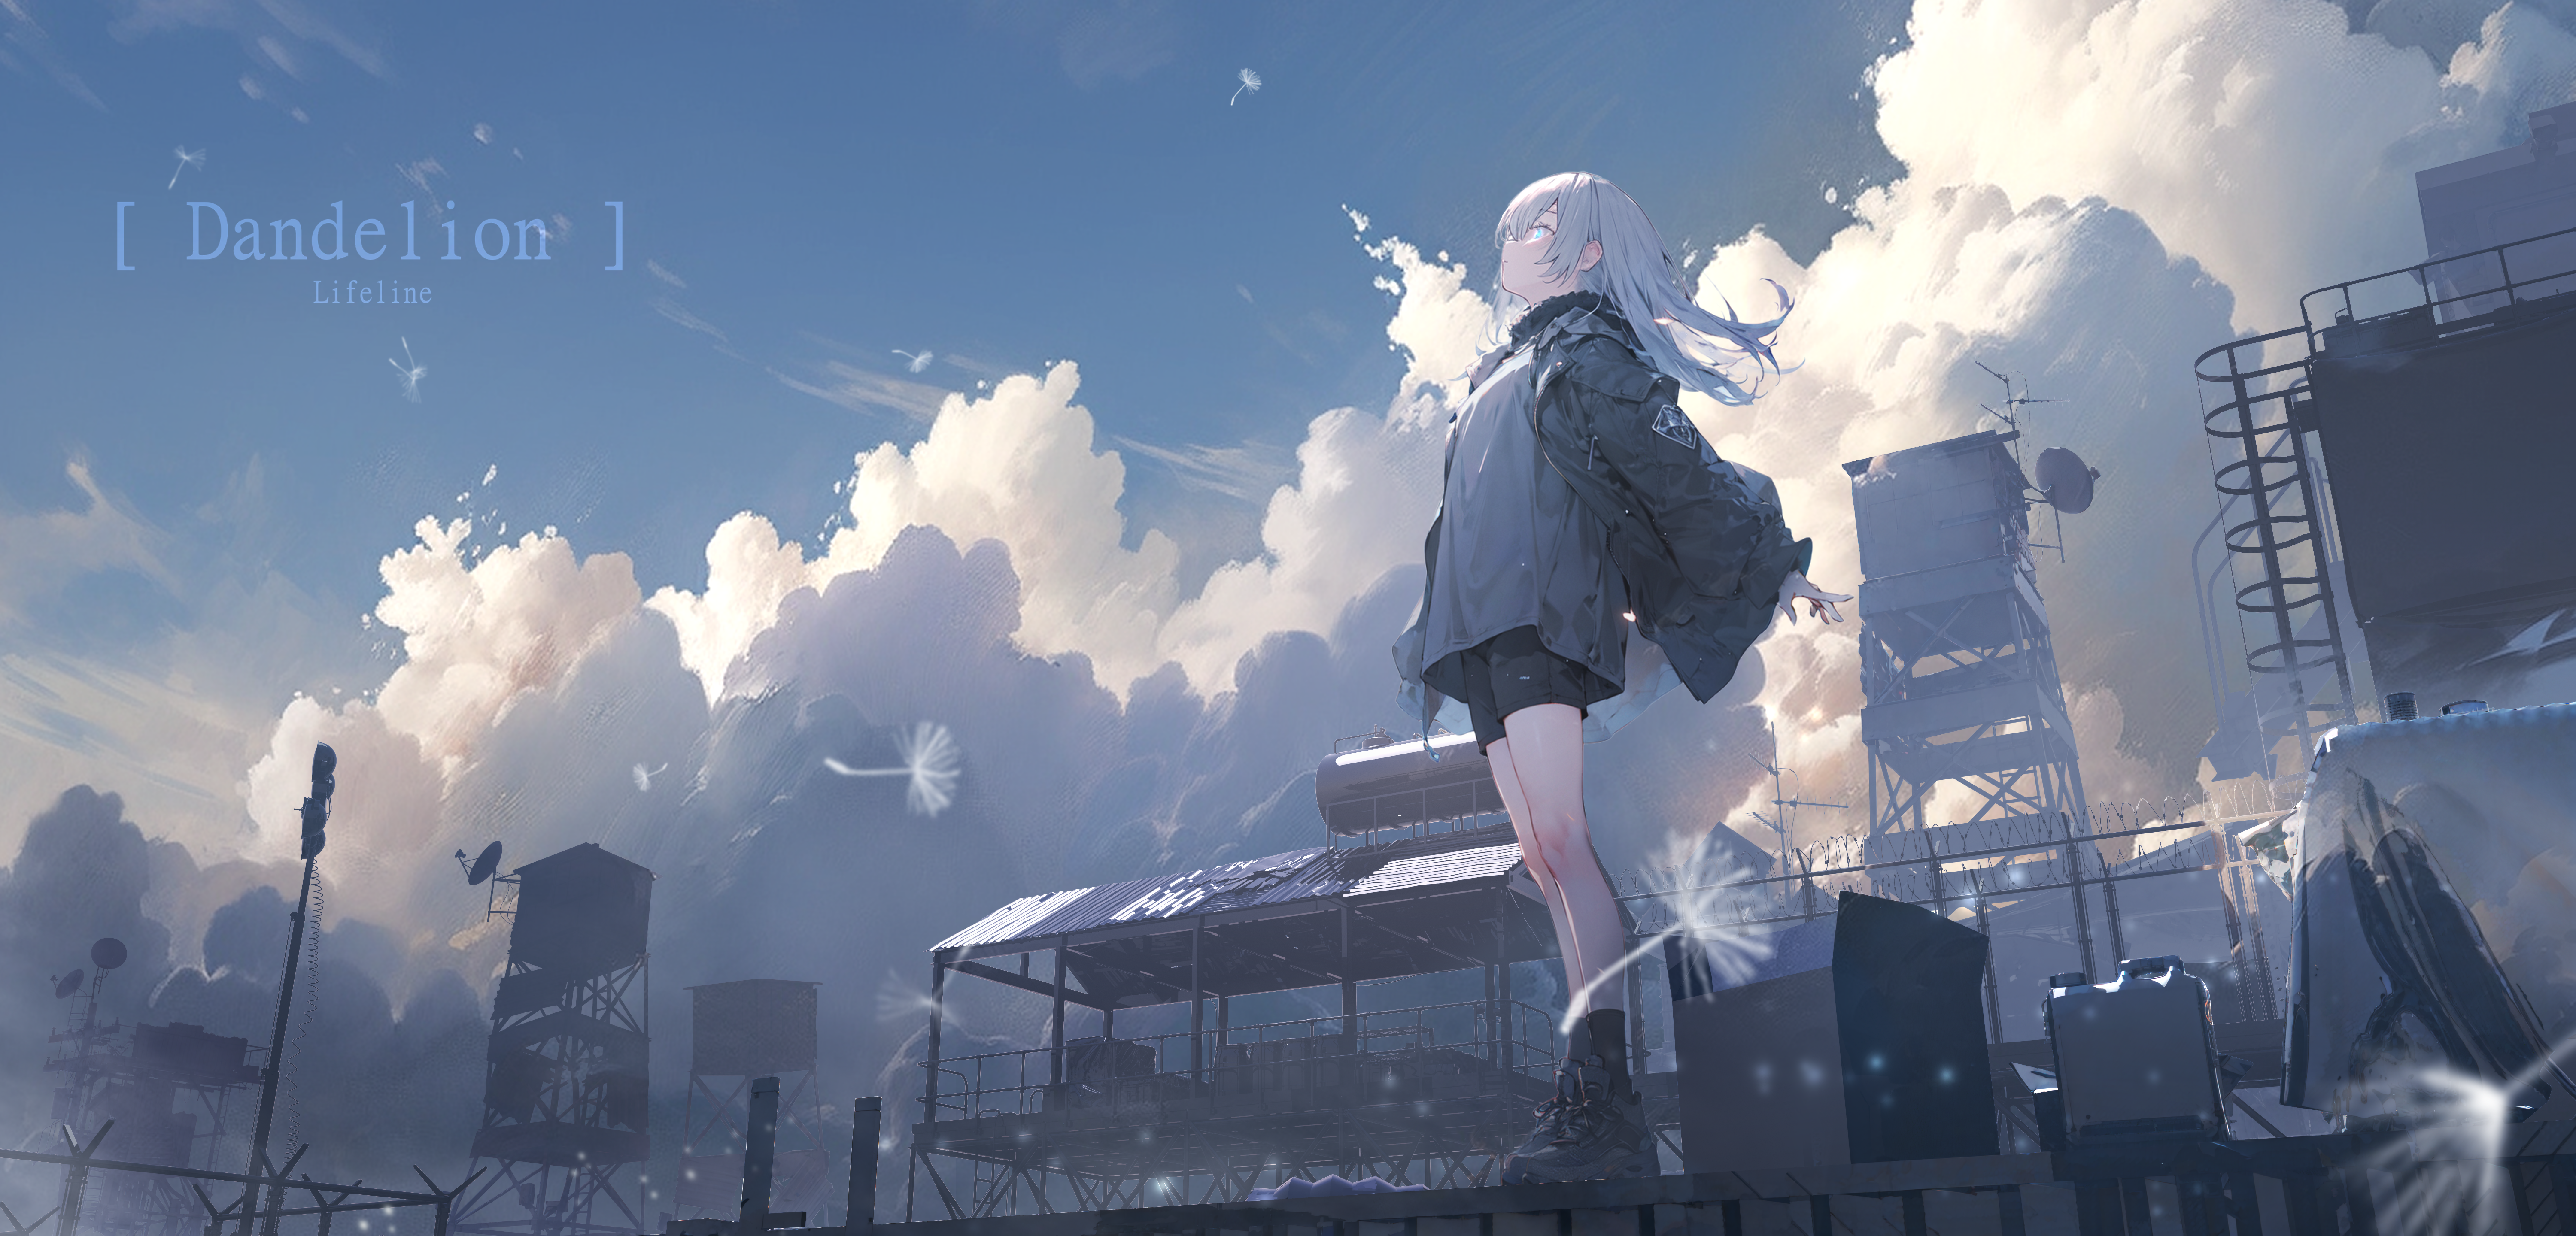 Anime Girls Women Landscape Clouds Scenery Sky Digital Art Lifeline 6000x2880